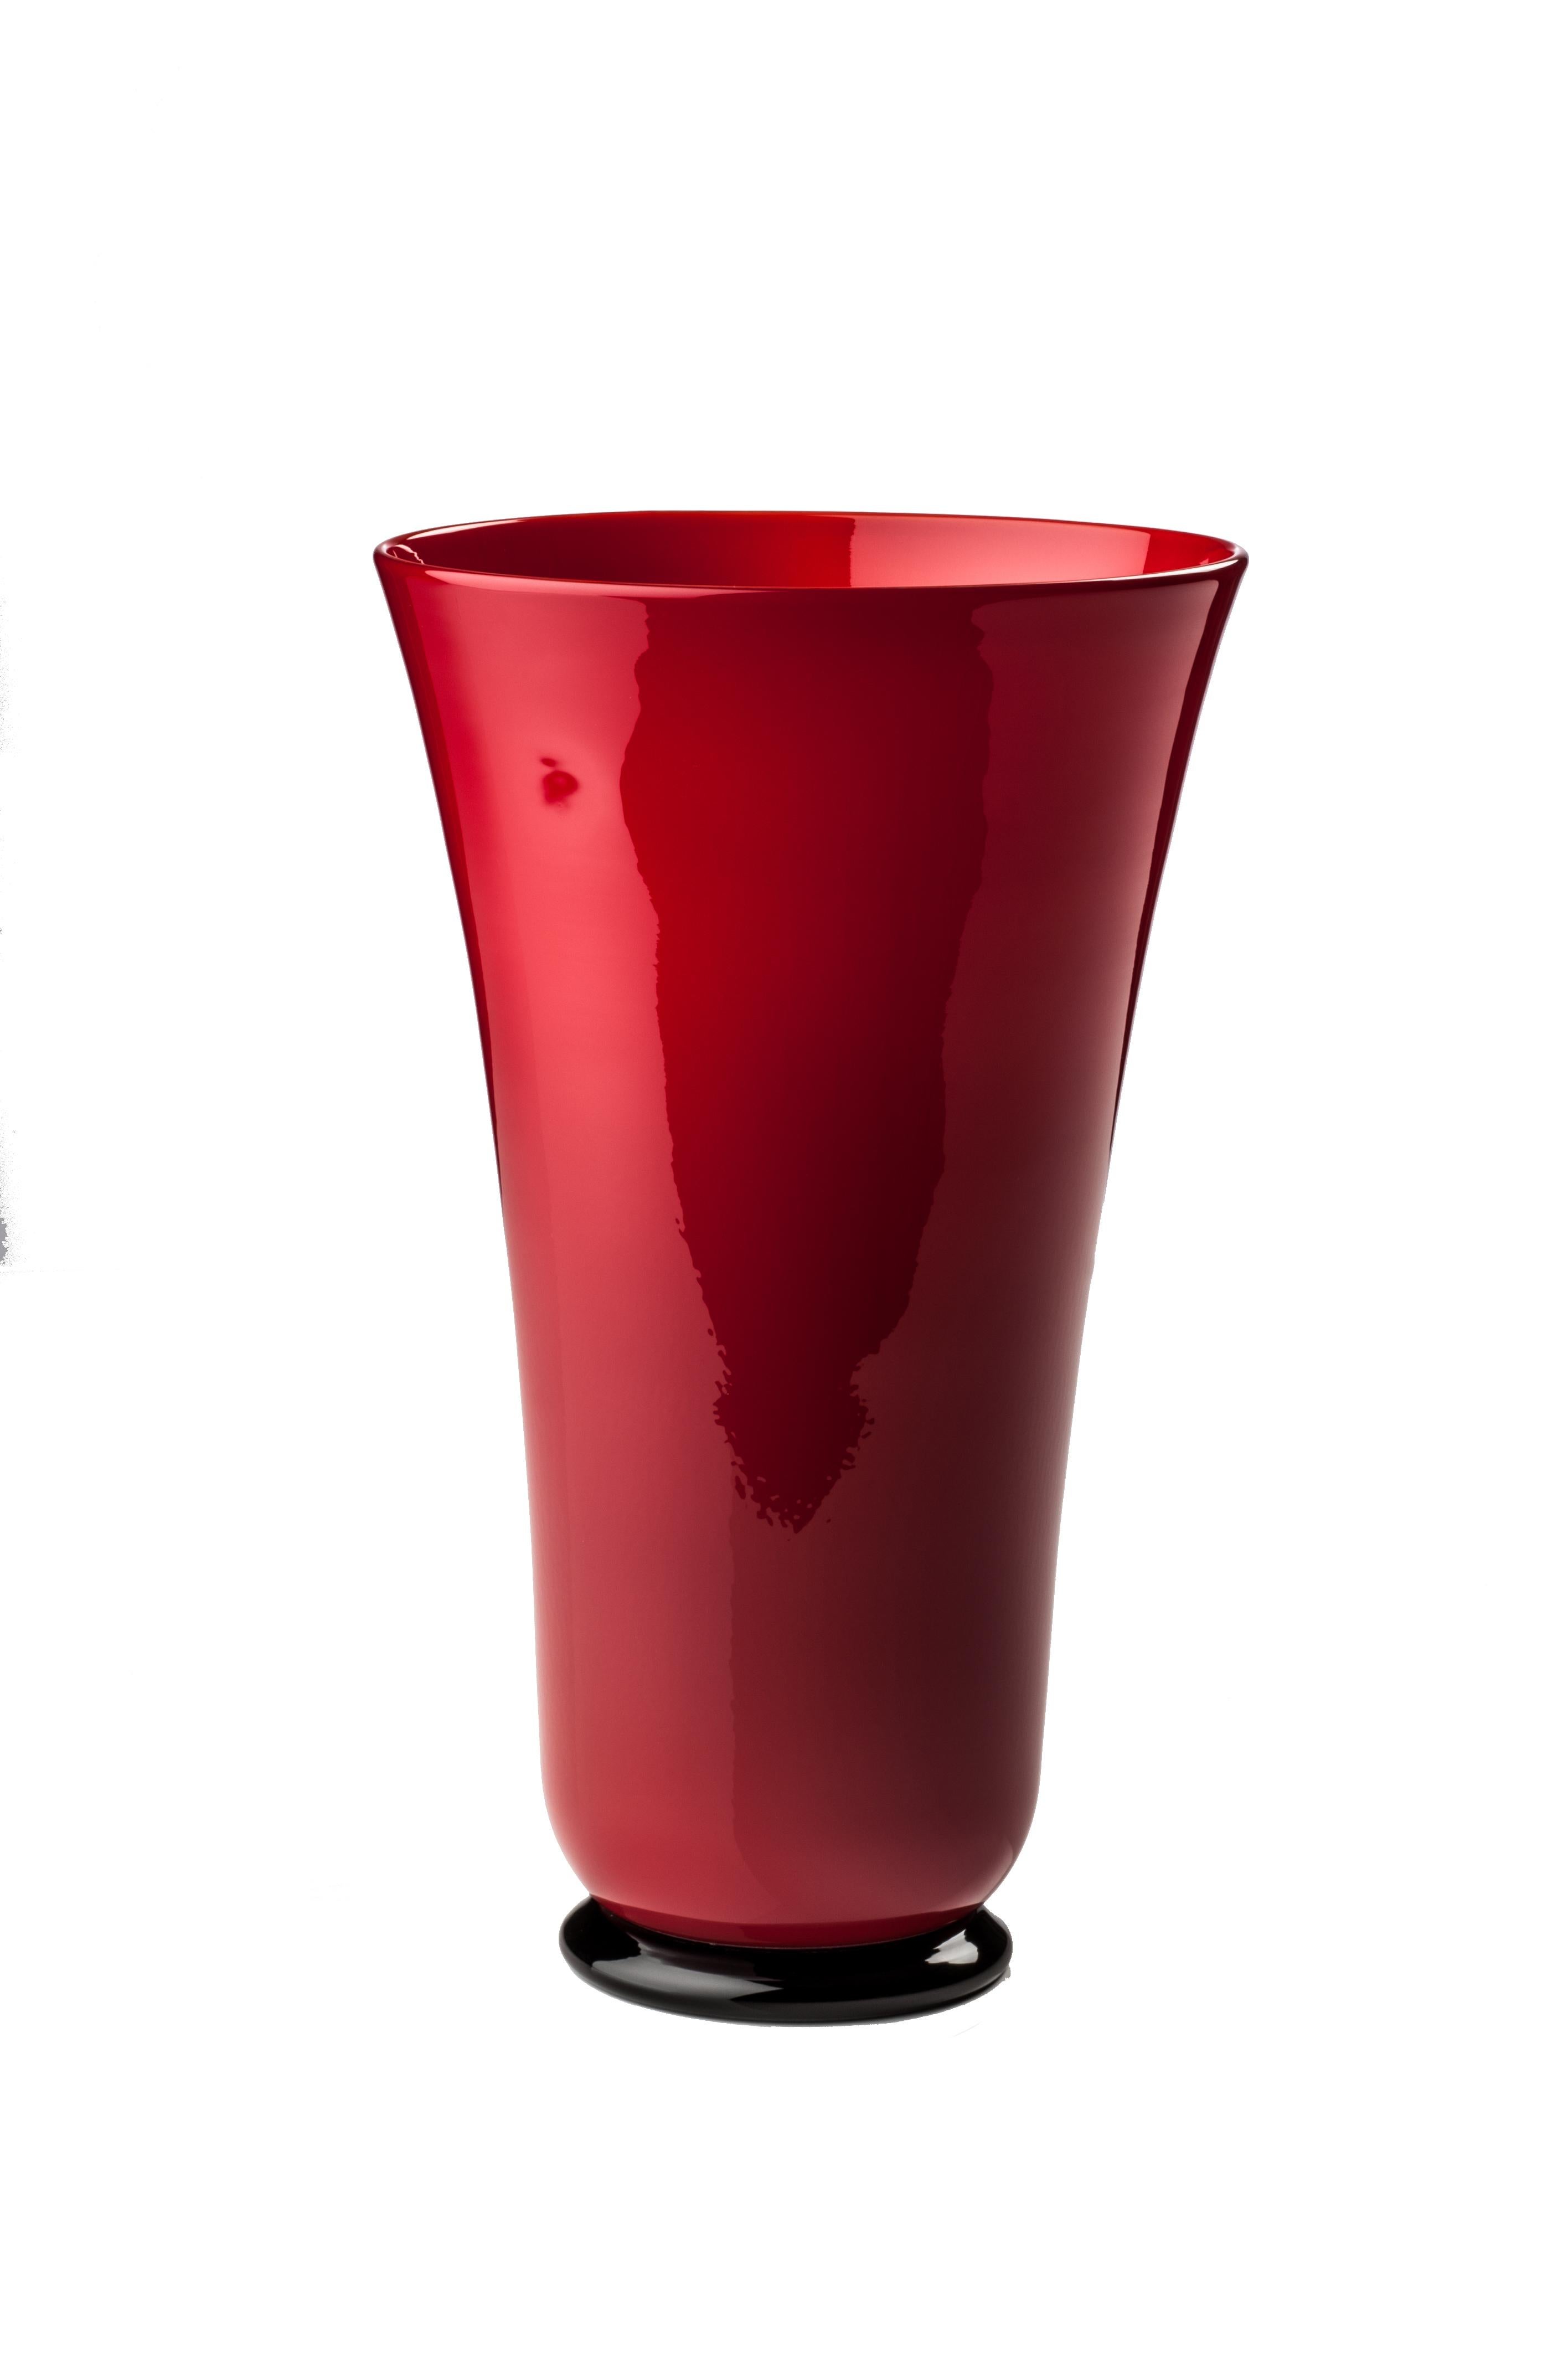 Venini Glasschale in Marine Rot. Perfekt für die Innendekoration als Behälter oder Schmuckstück für jeden Raum. Auch in anderen Farben auf 1stdibs erhältlich. 

Abmessungen: 18 cm Durchmesser x 31 cm Höhe.